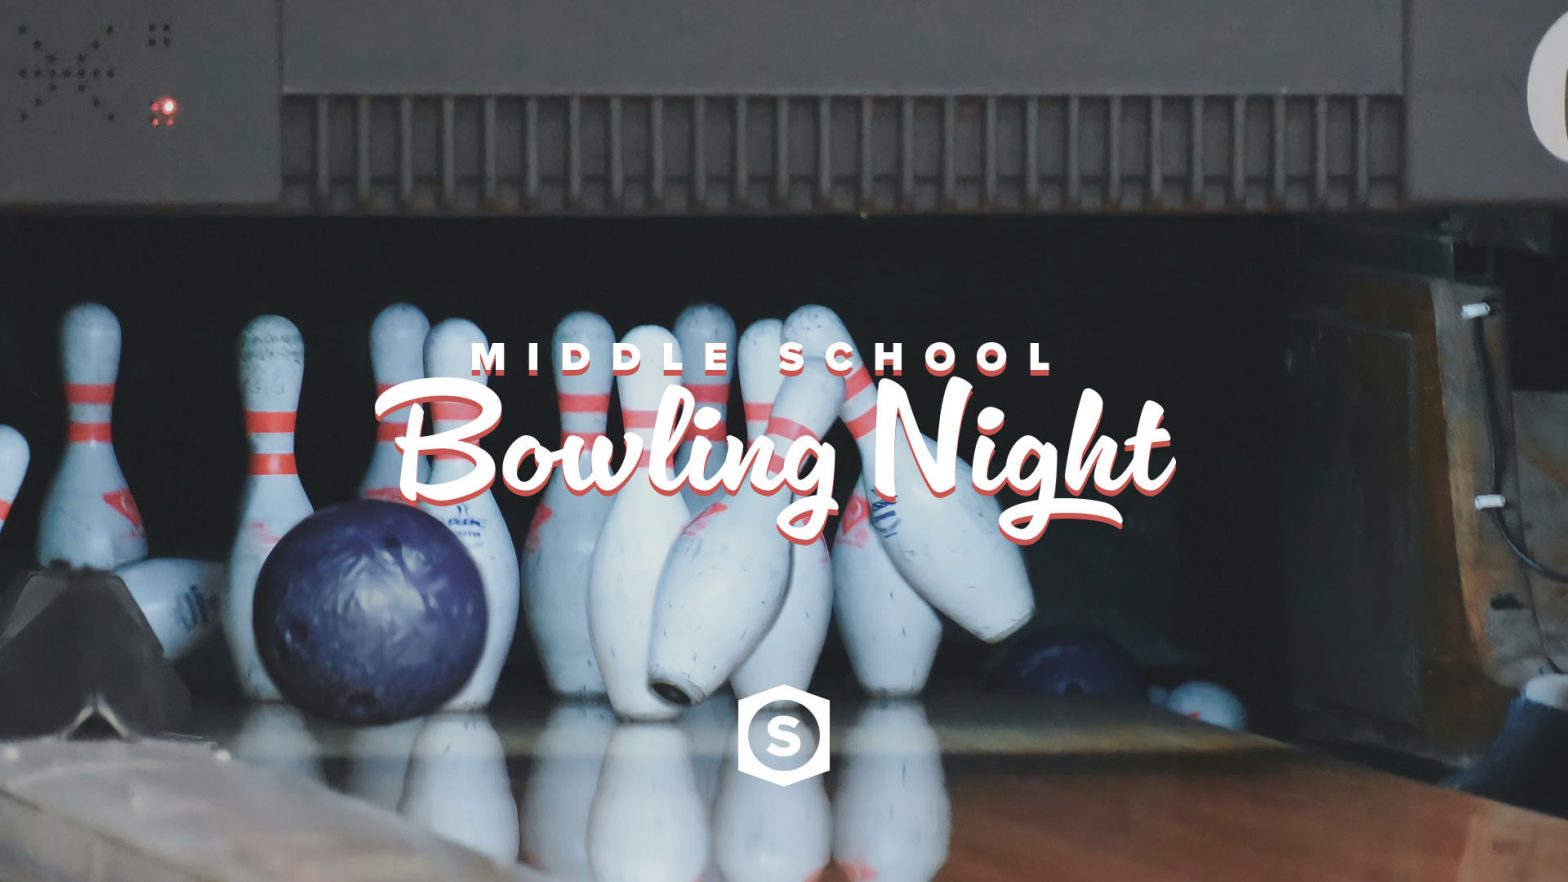 MS Bowling Night image